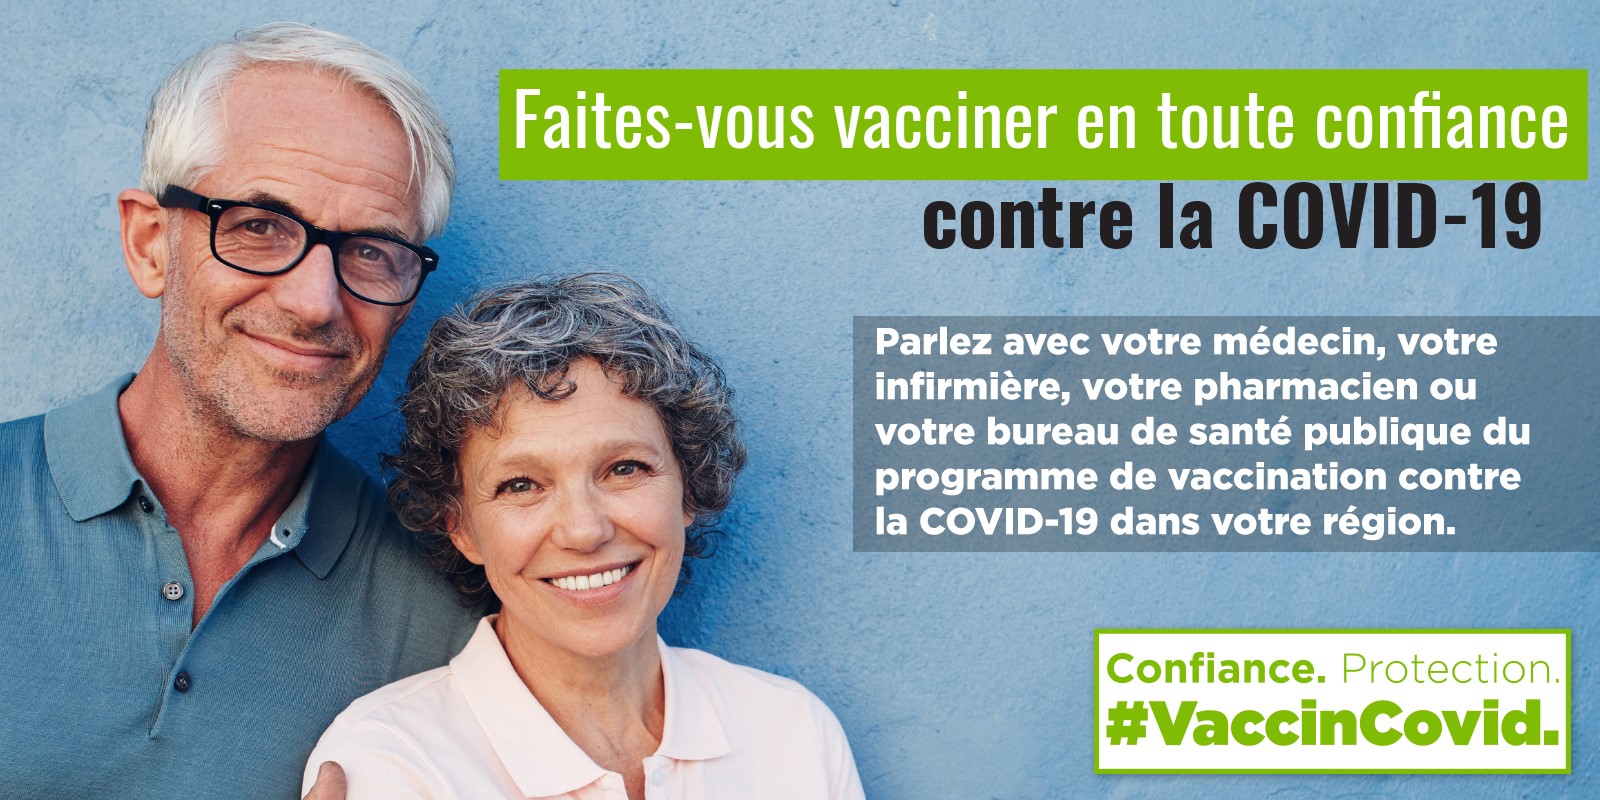 Faites-vous vacciner en toute confiance contre la COVID-19 : les adultes de 55 ans et plus